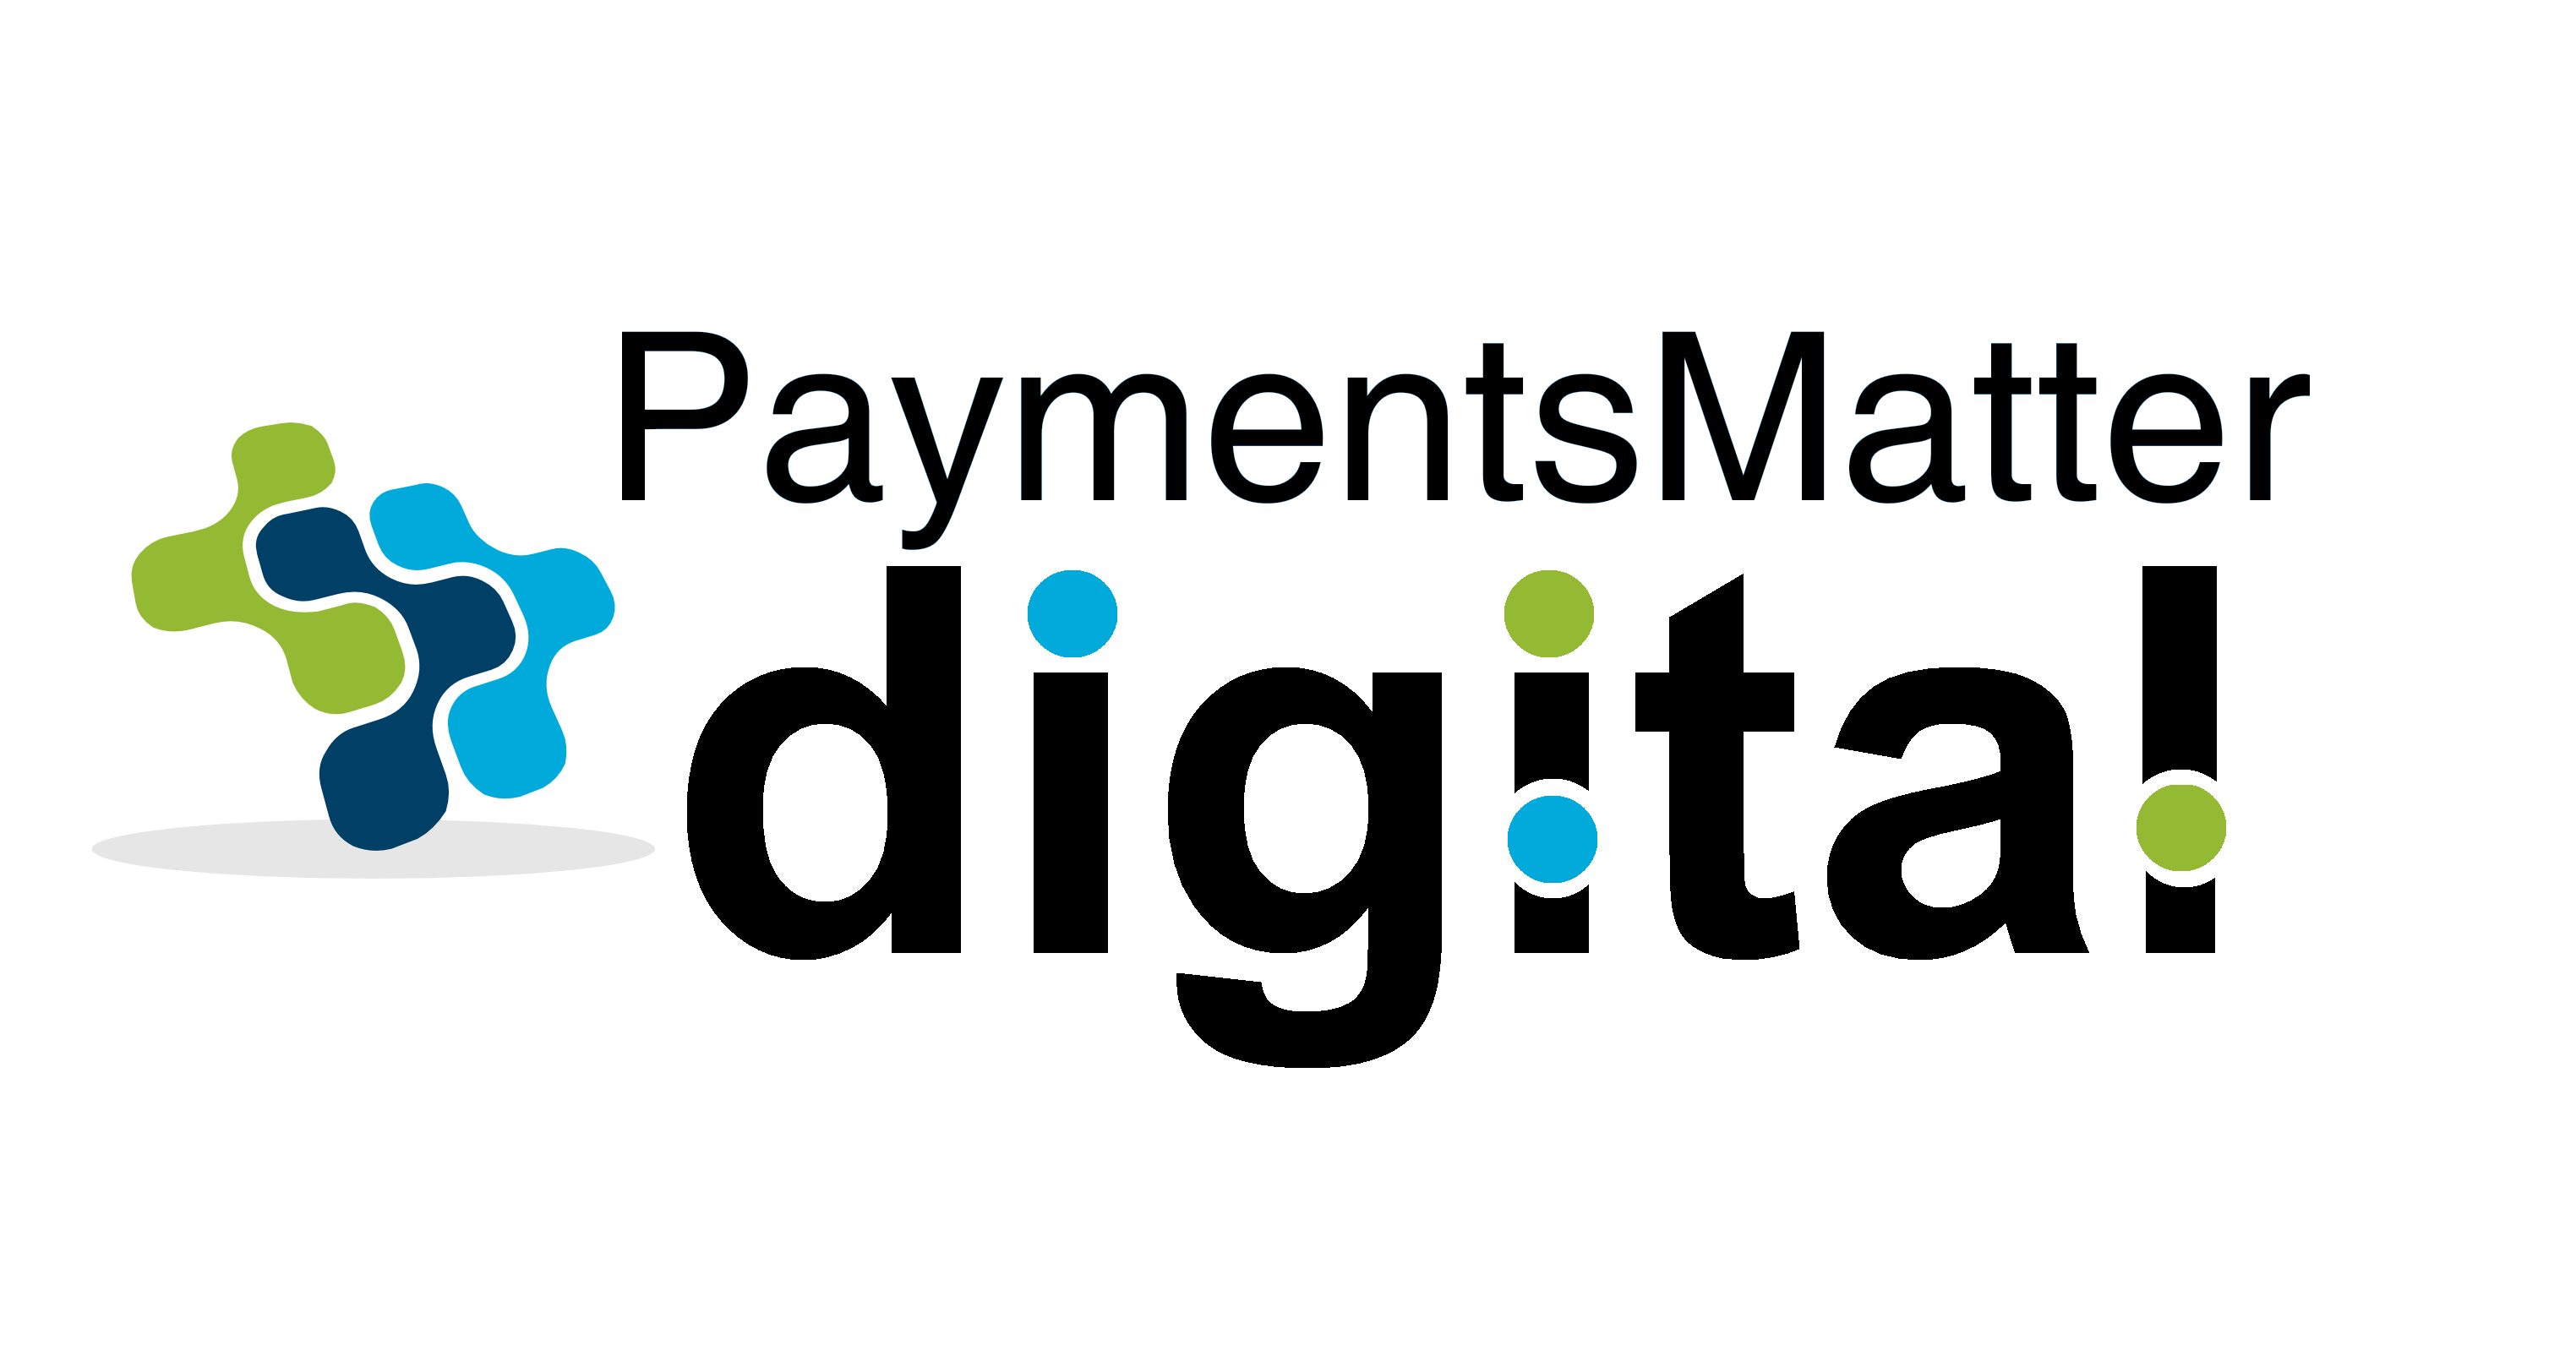 Paymentsmatter Ltd